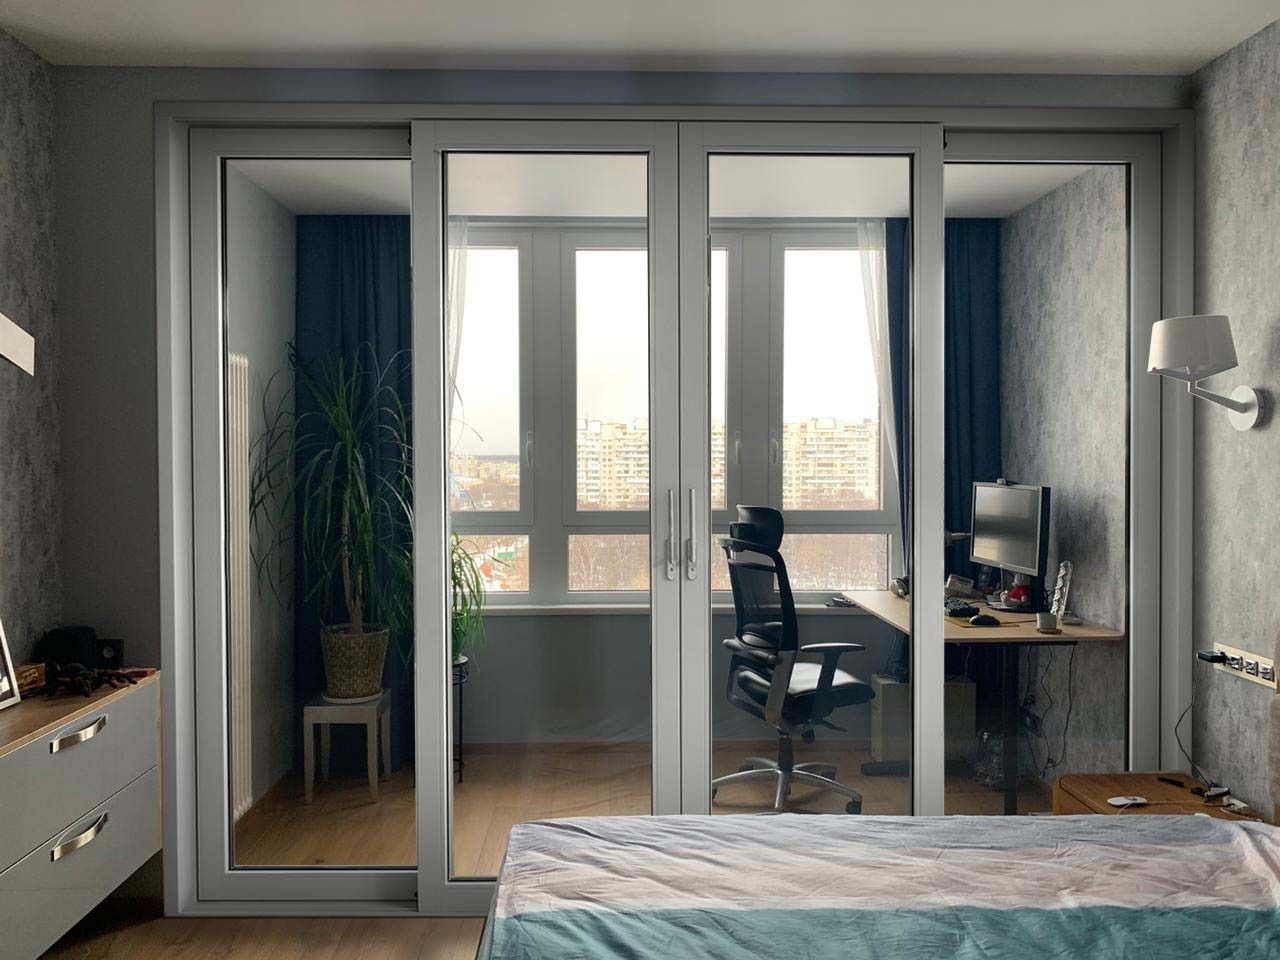 Отдельное окно расширение. Французские окна в квартире. Французские окната квартире.